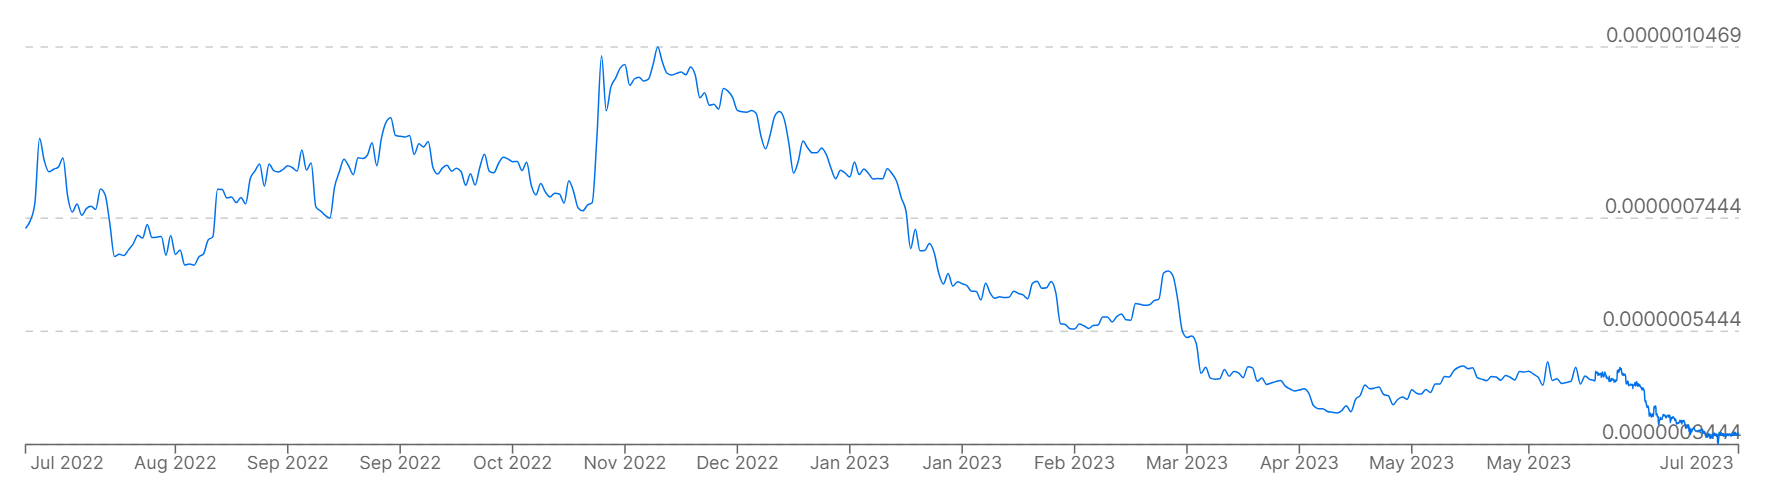 Biểu đồ hiển thị giá Bitcoin so với đồng rúp của Nga trong 12 tháng qua.